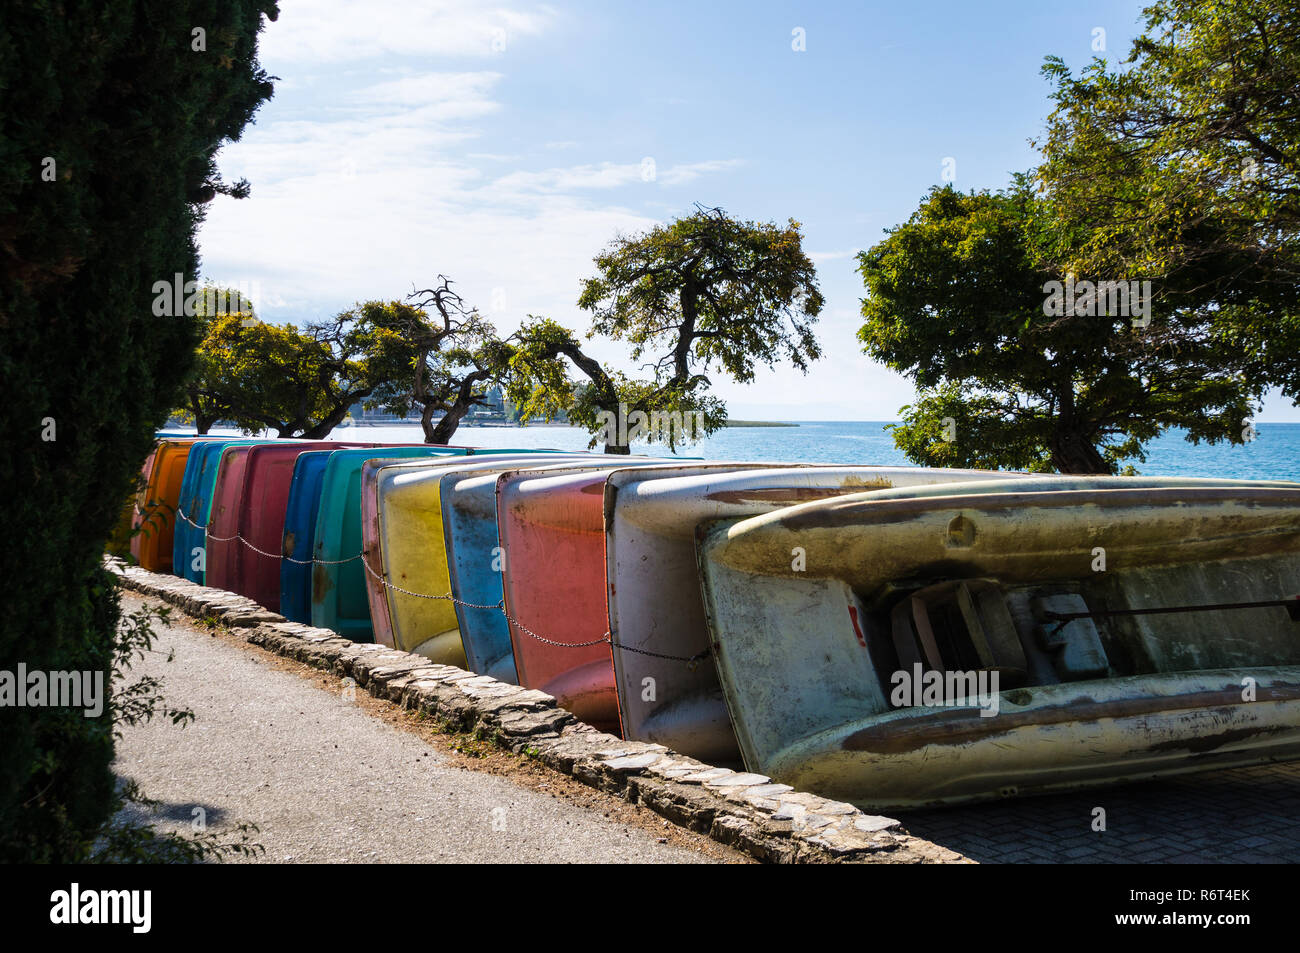 El final de la temporada de verano; coloridos botes de pedal / patines obteniendo almacenados en la playa en Macedonia. Foto de stock